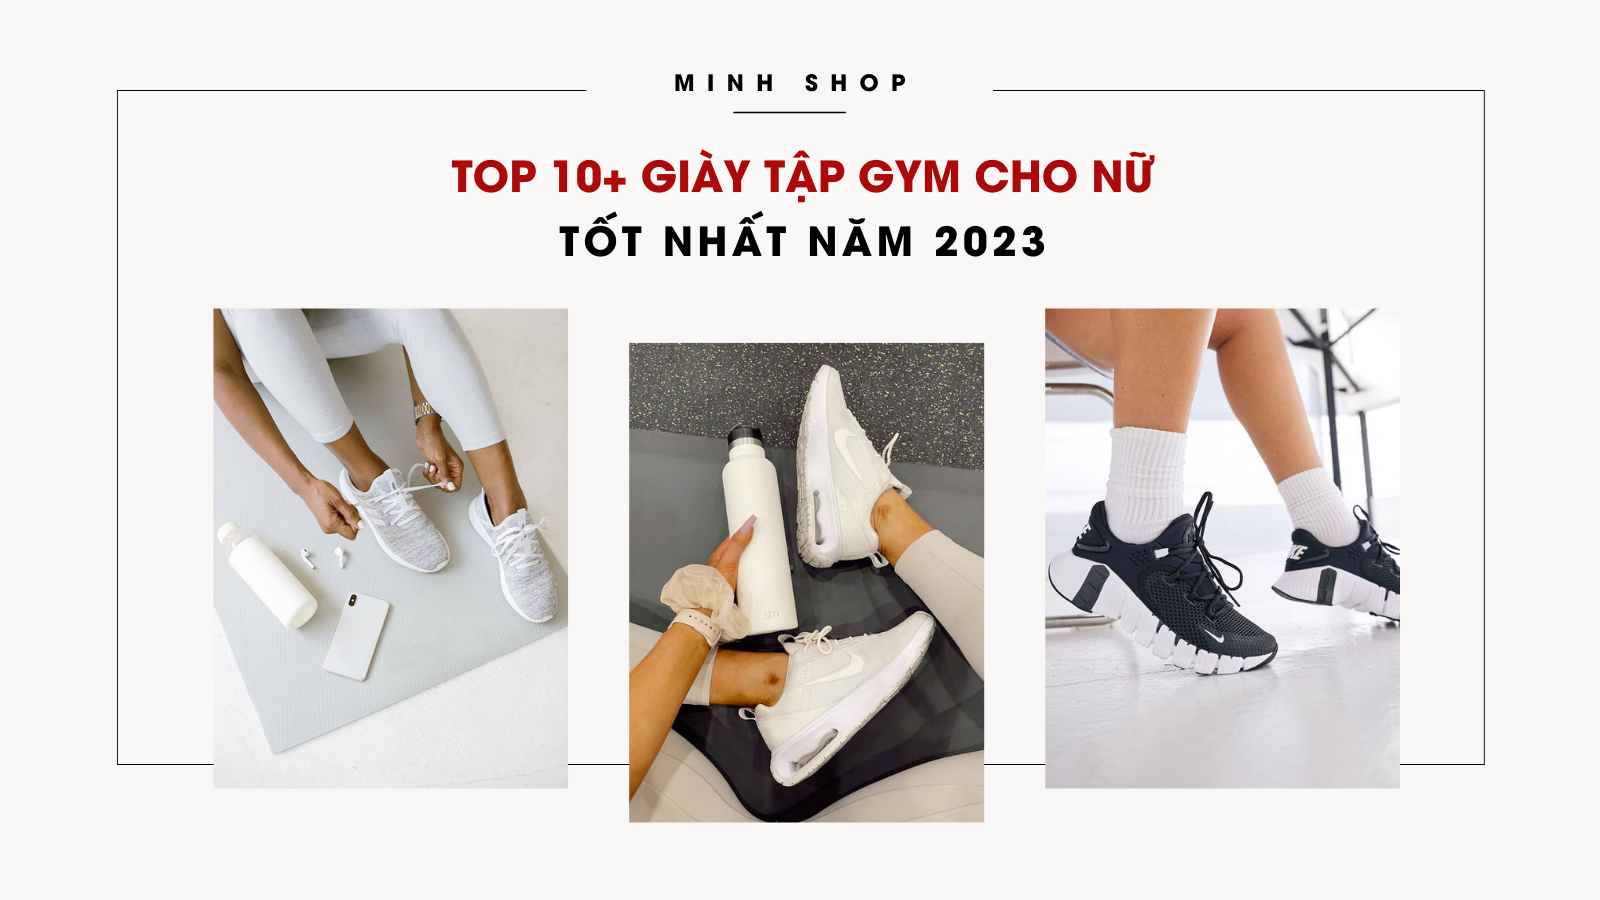 Minhshop.vn - Top 10+ giày tập gym cho nữ tốt nhất tại TPHCM năm 2023